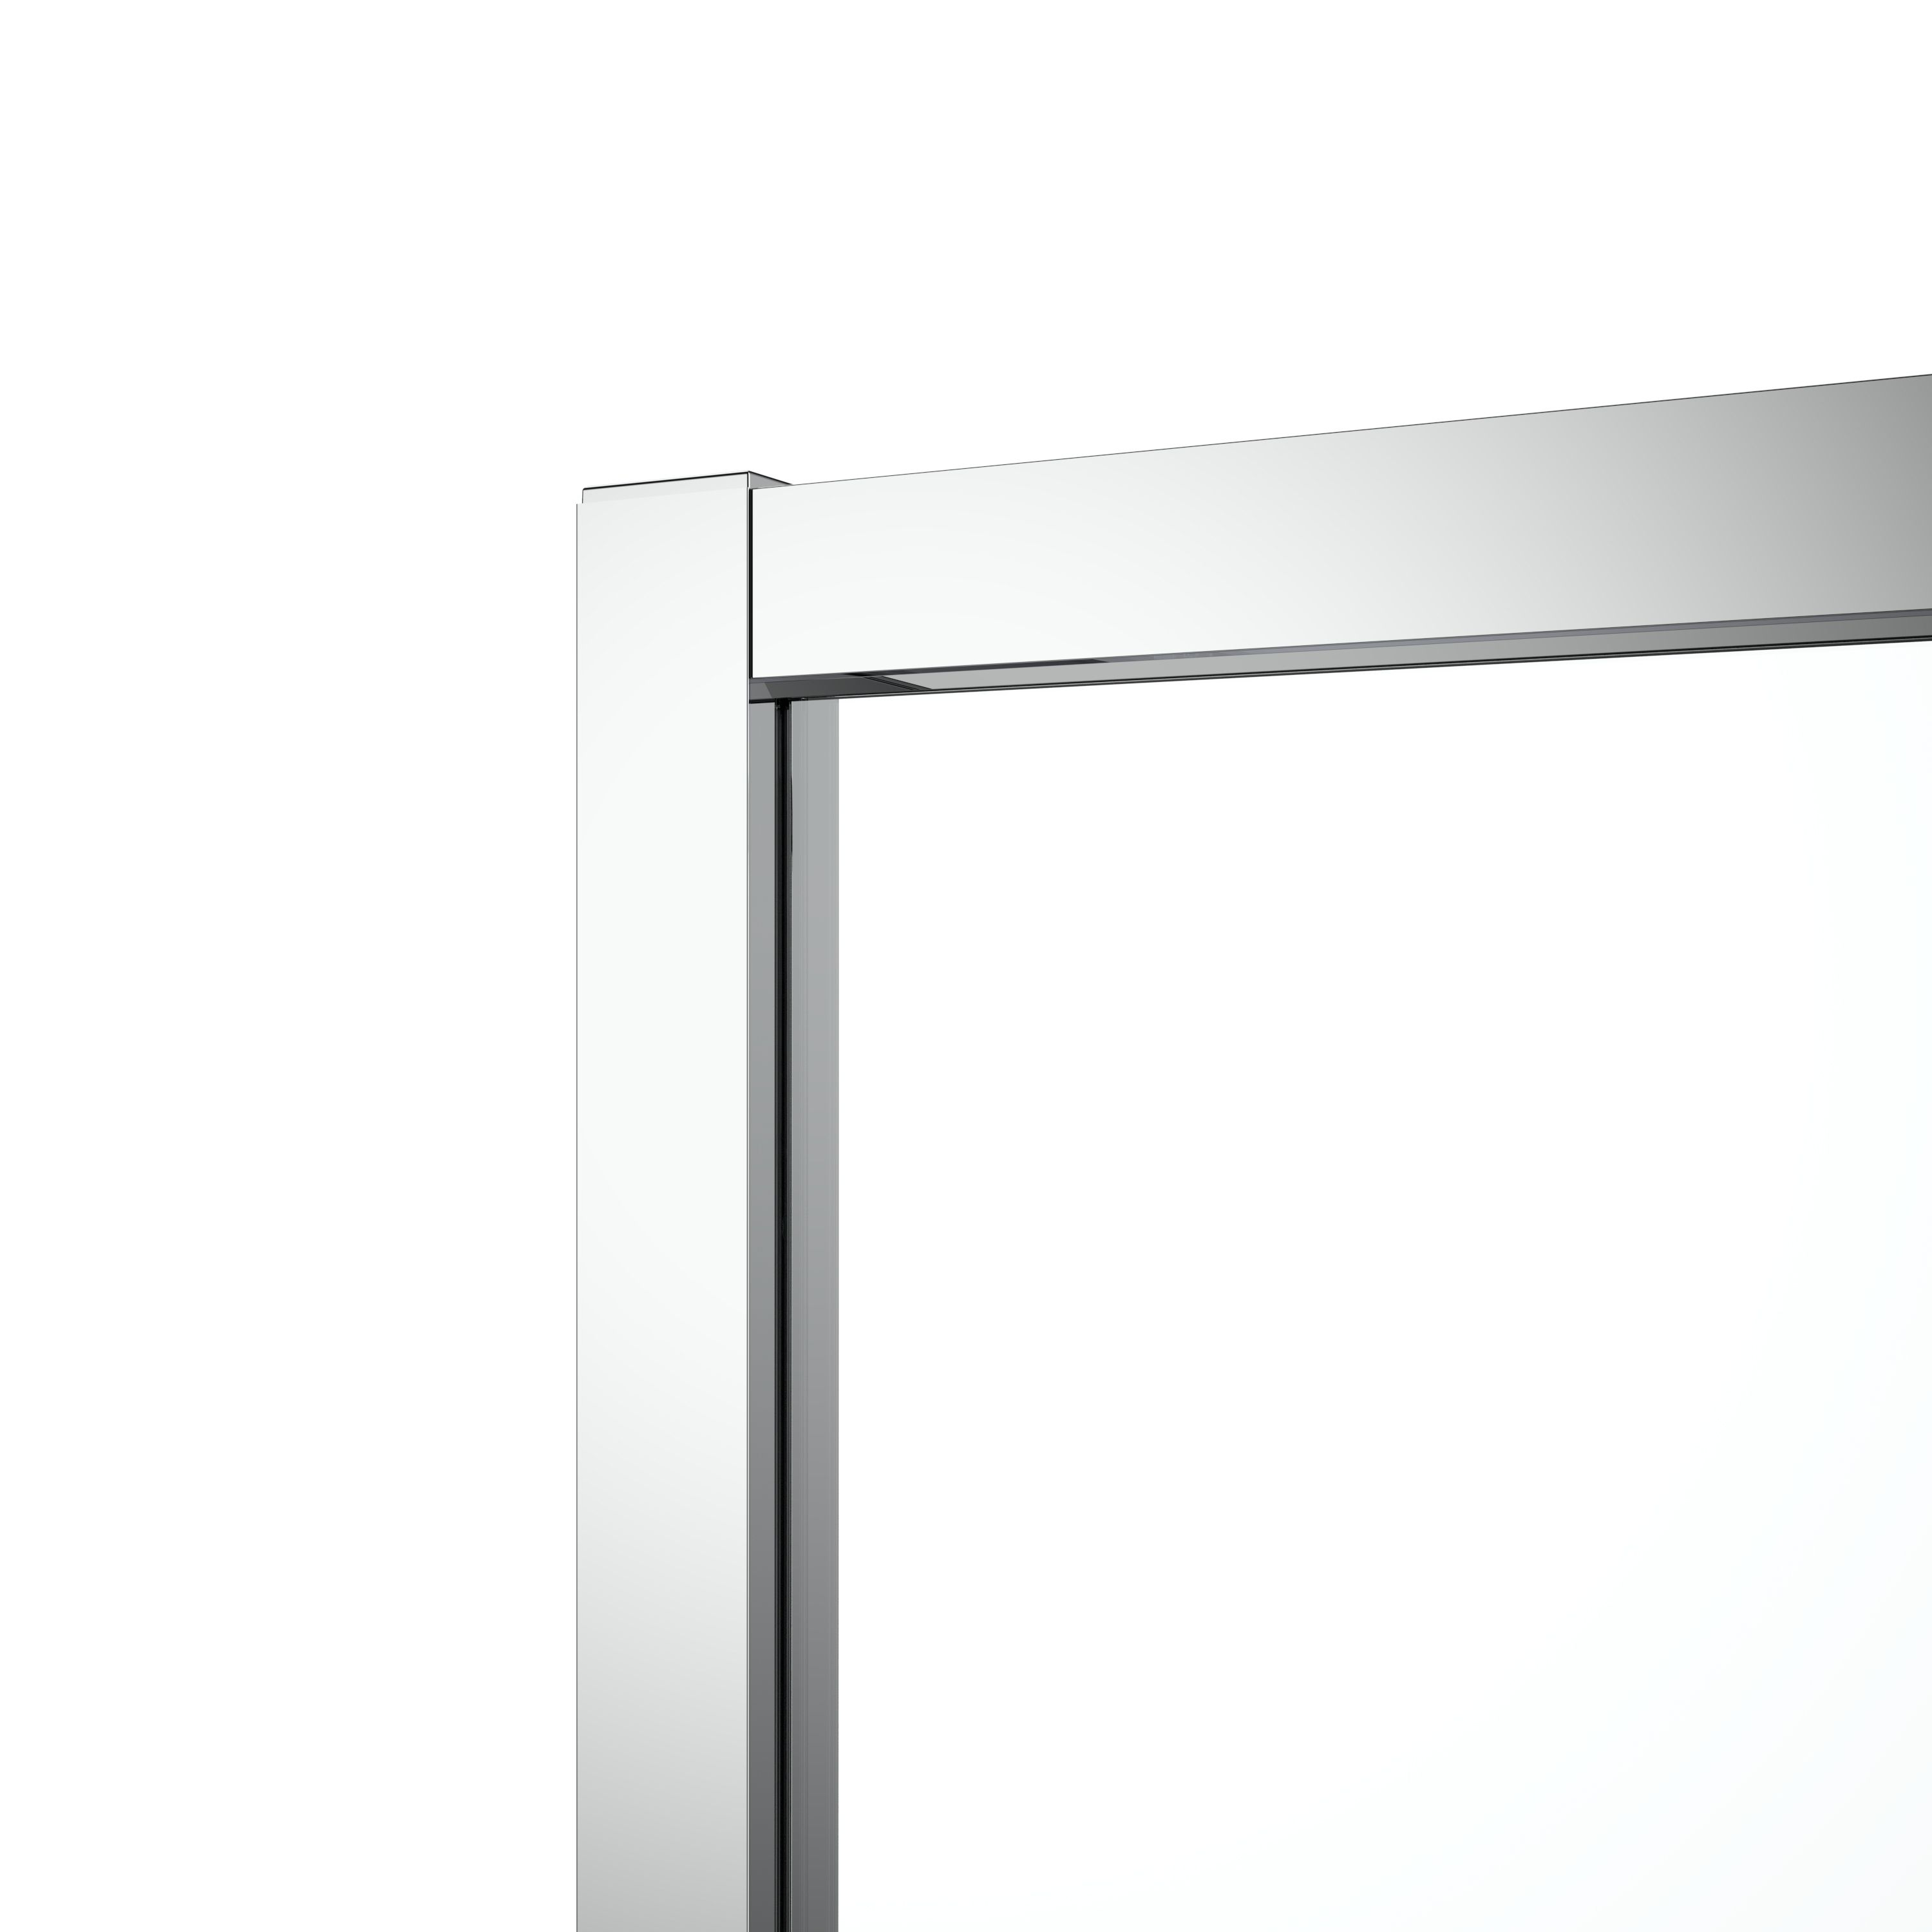 GoodHome Ledava Clear glass Chrome effect Square Shower enclosure - Corner entry double sliding door (W)80cm (D)80cm